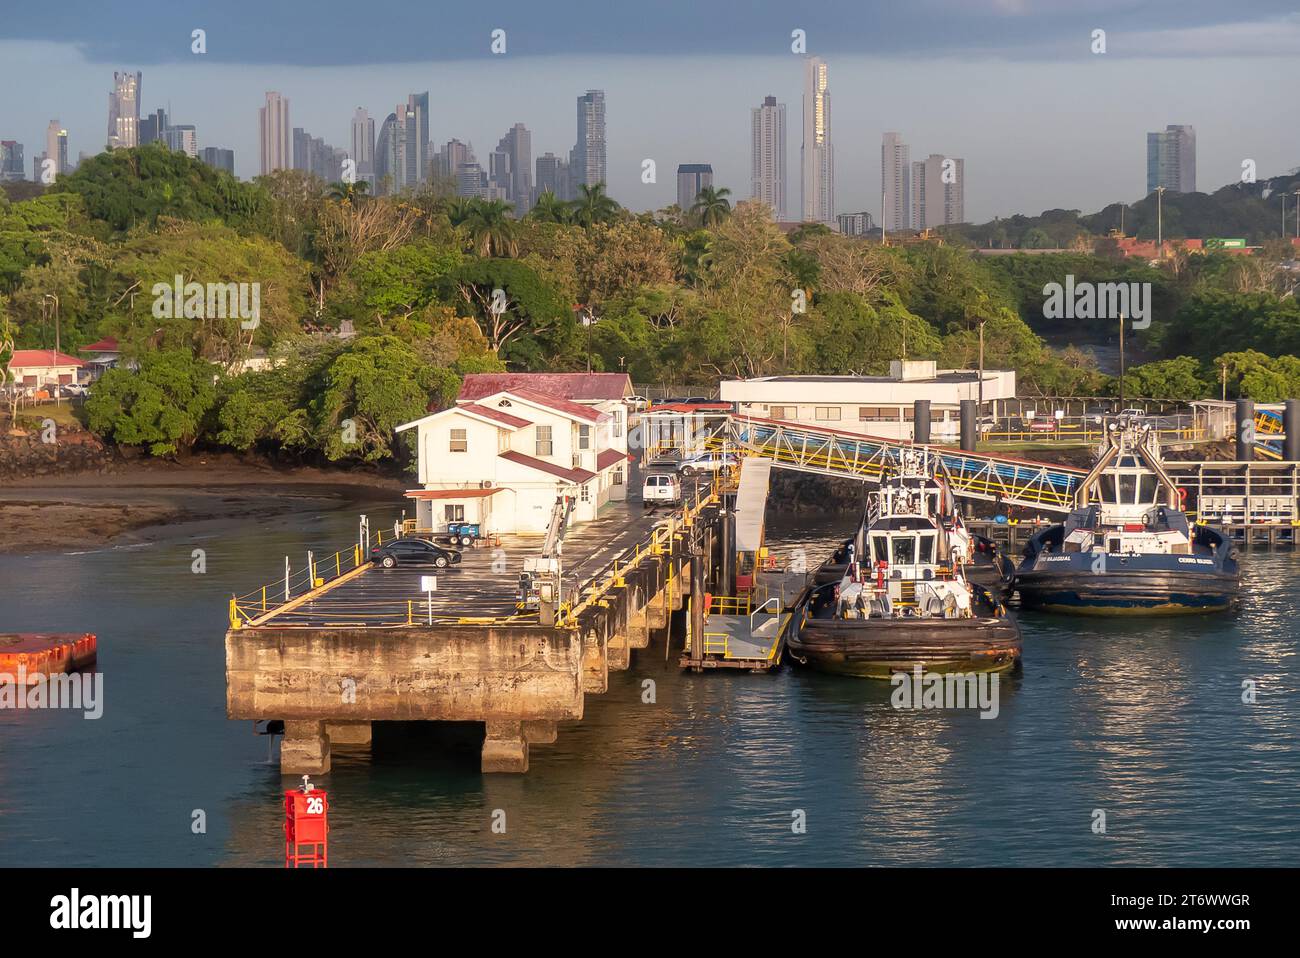 El Canal de Panamá: Embarcadero de Diablo, y las torres de gran altura de la Ciudad de Panamá que aparecen sobre la selva tropical. Foto de stock